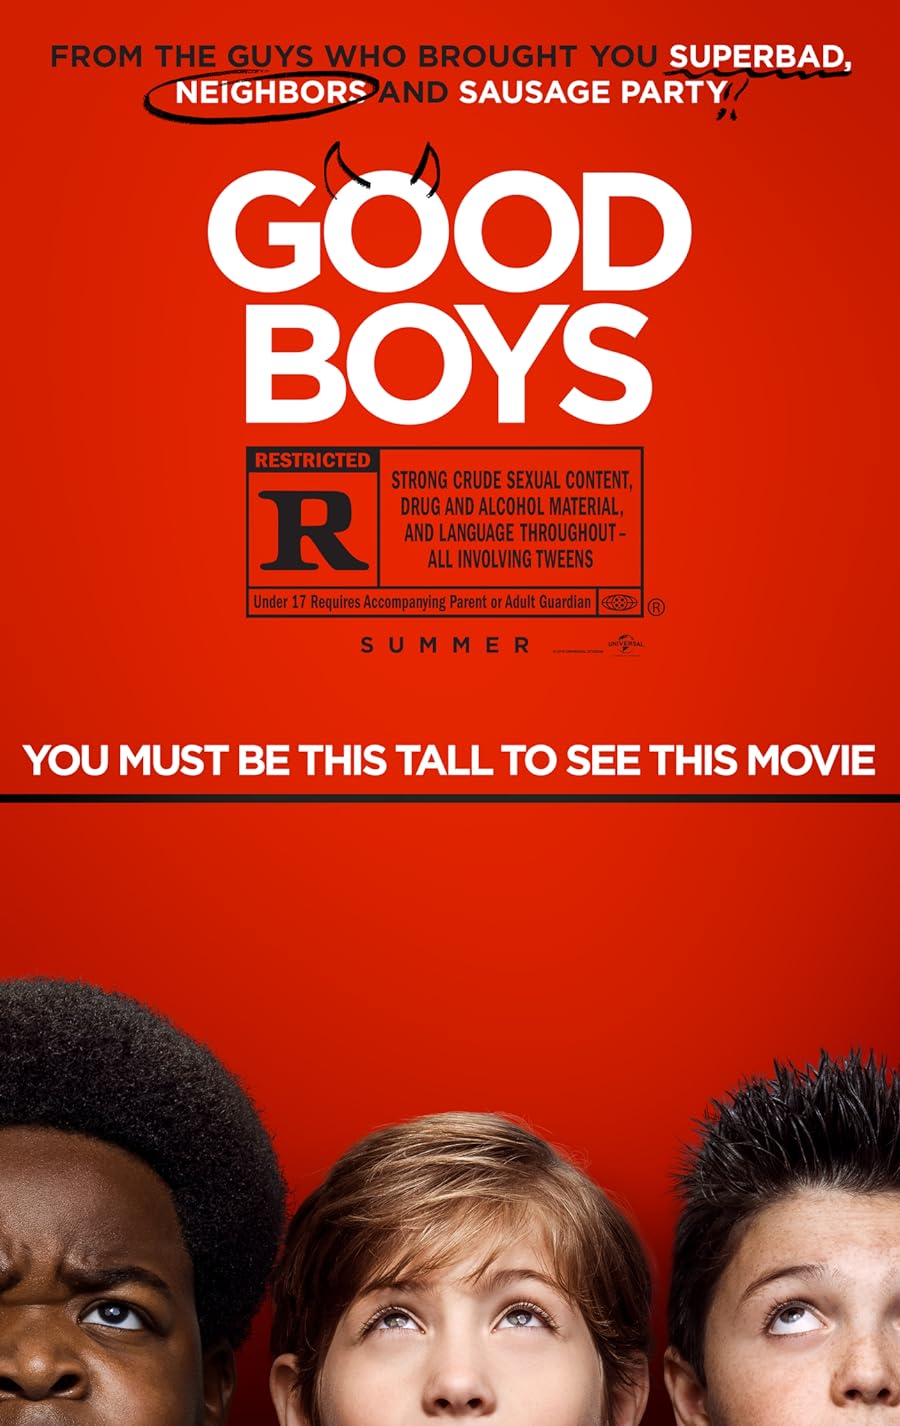 دانلود فیلم Good Boys 2019